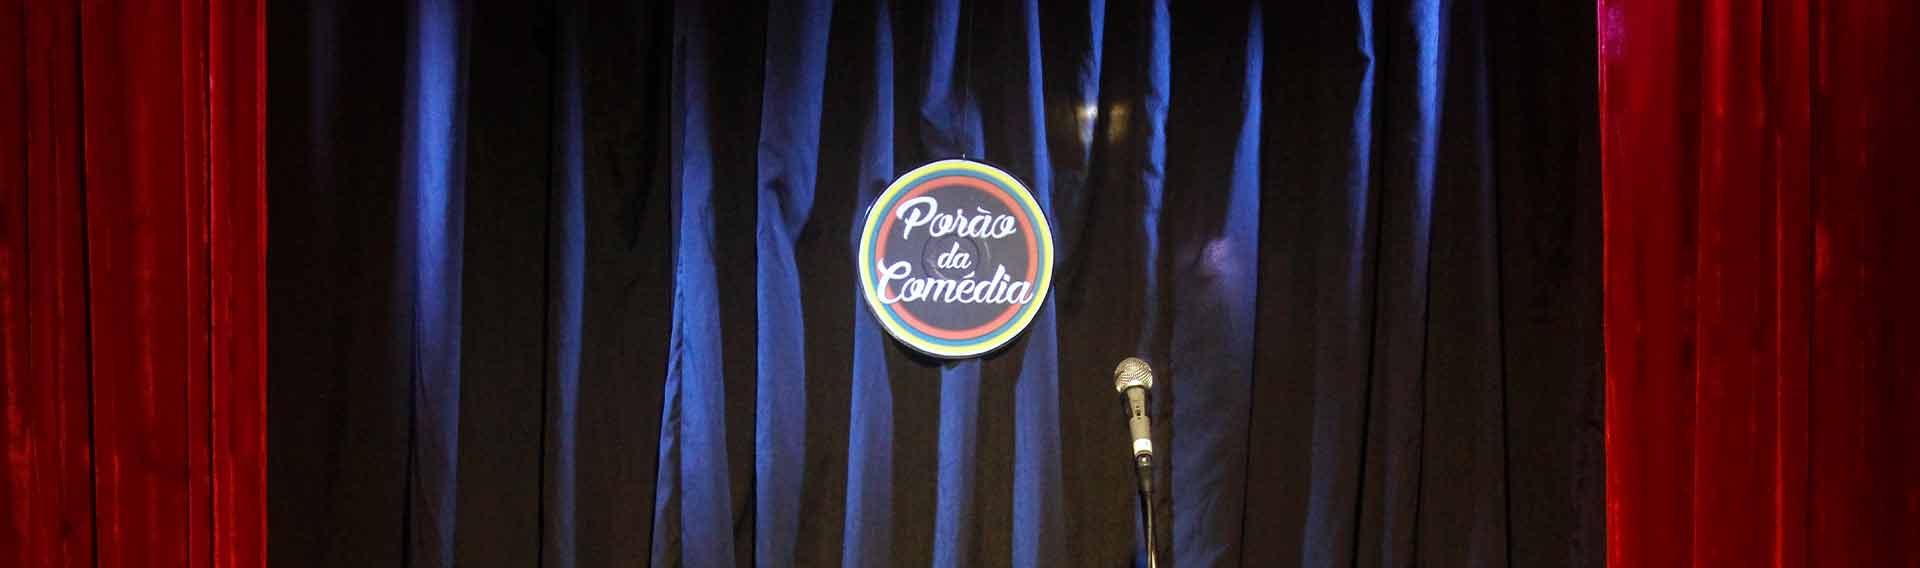 porao-da-comedia-stand-up-comedy-rio-de-janeiro-banner_depoimento